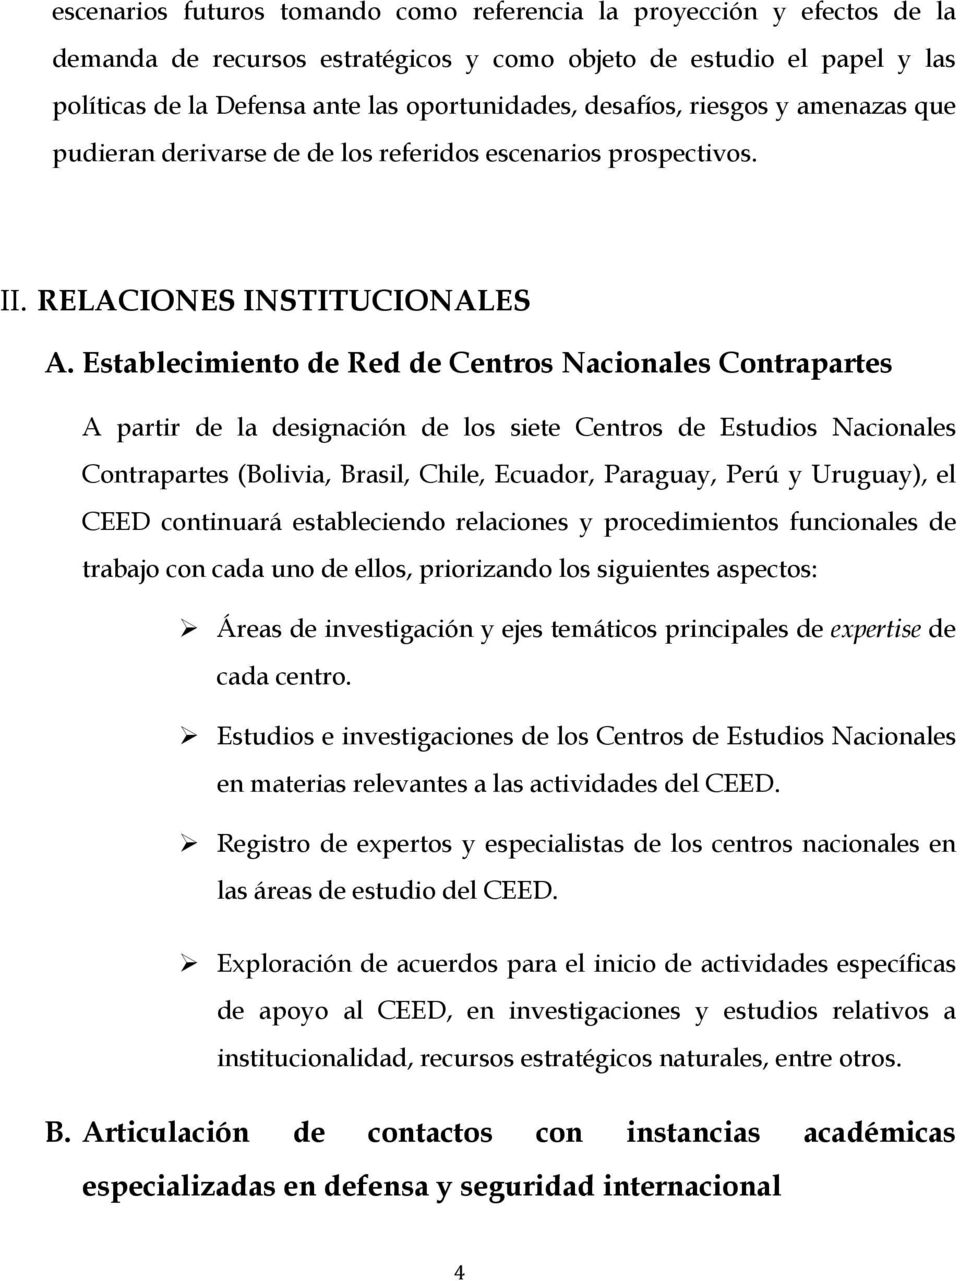 Establecimiento de Red de Centros Nacionales Contrapartes A partir de la designación de los siete Centros de Estudios Nacionales Contrapartes (Bolivia, Brasil, Chile, Ecuador, Paraguay, Perú y